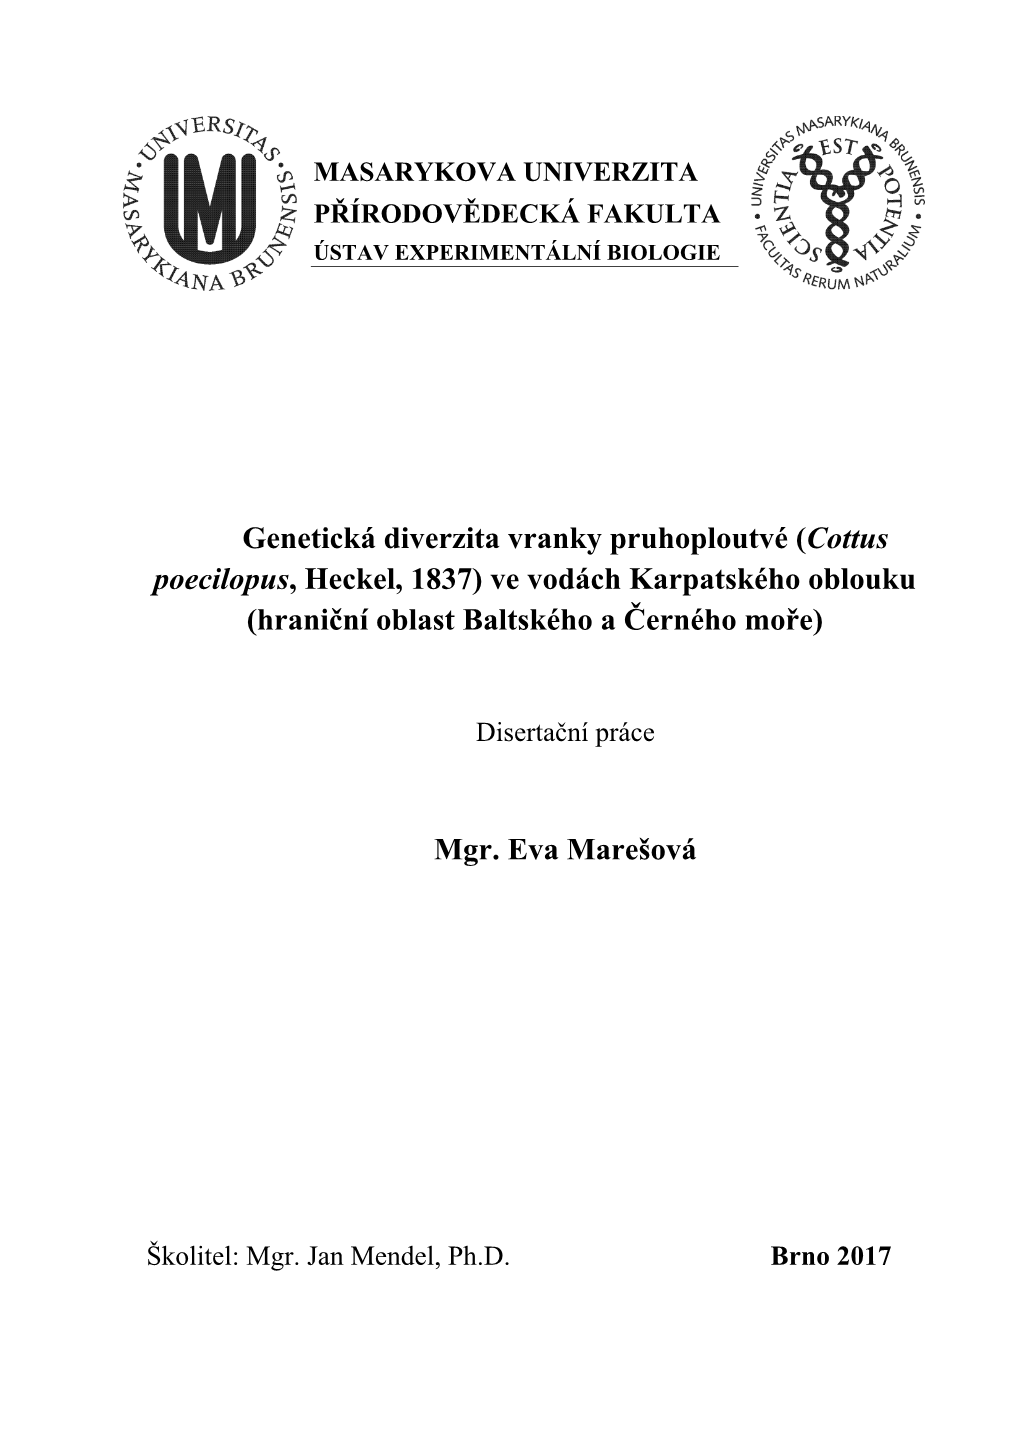 Vranka Pruhoploutvá, Rod Cottus, Haplotypy, Taxonomie, Fylogeneze, DNA Barcoding